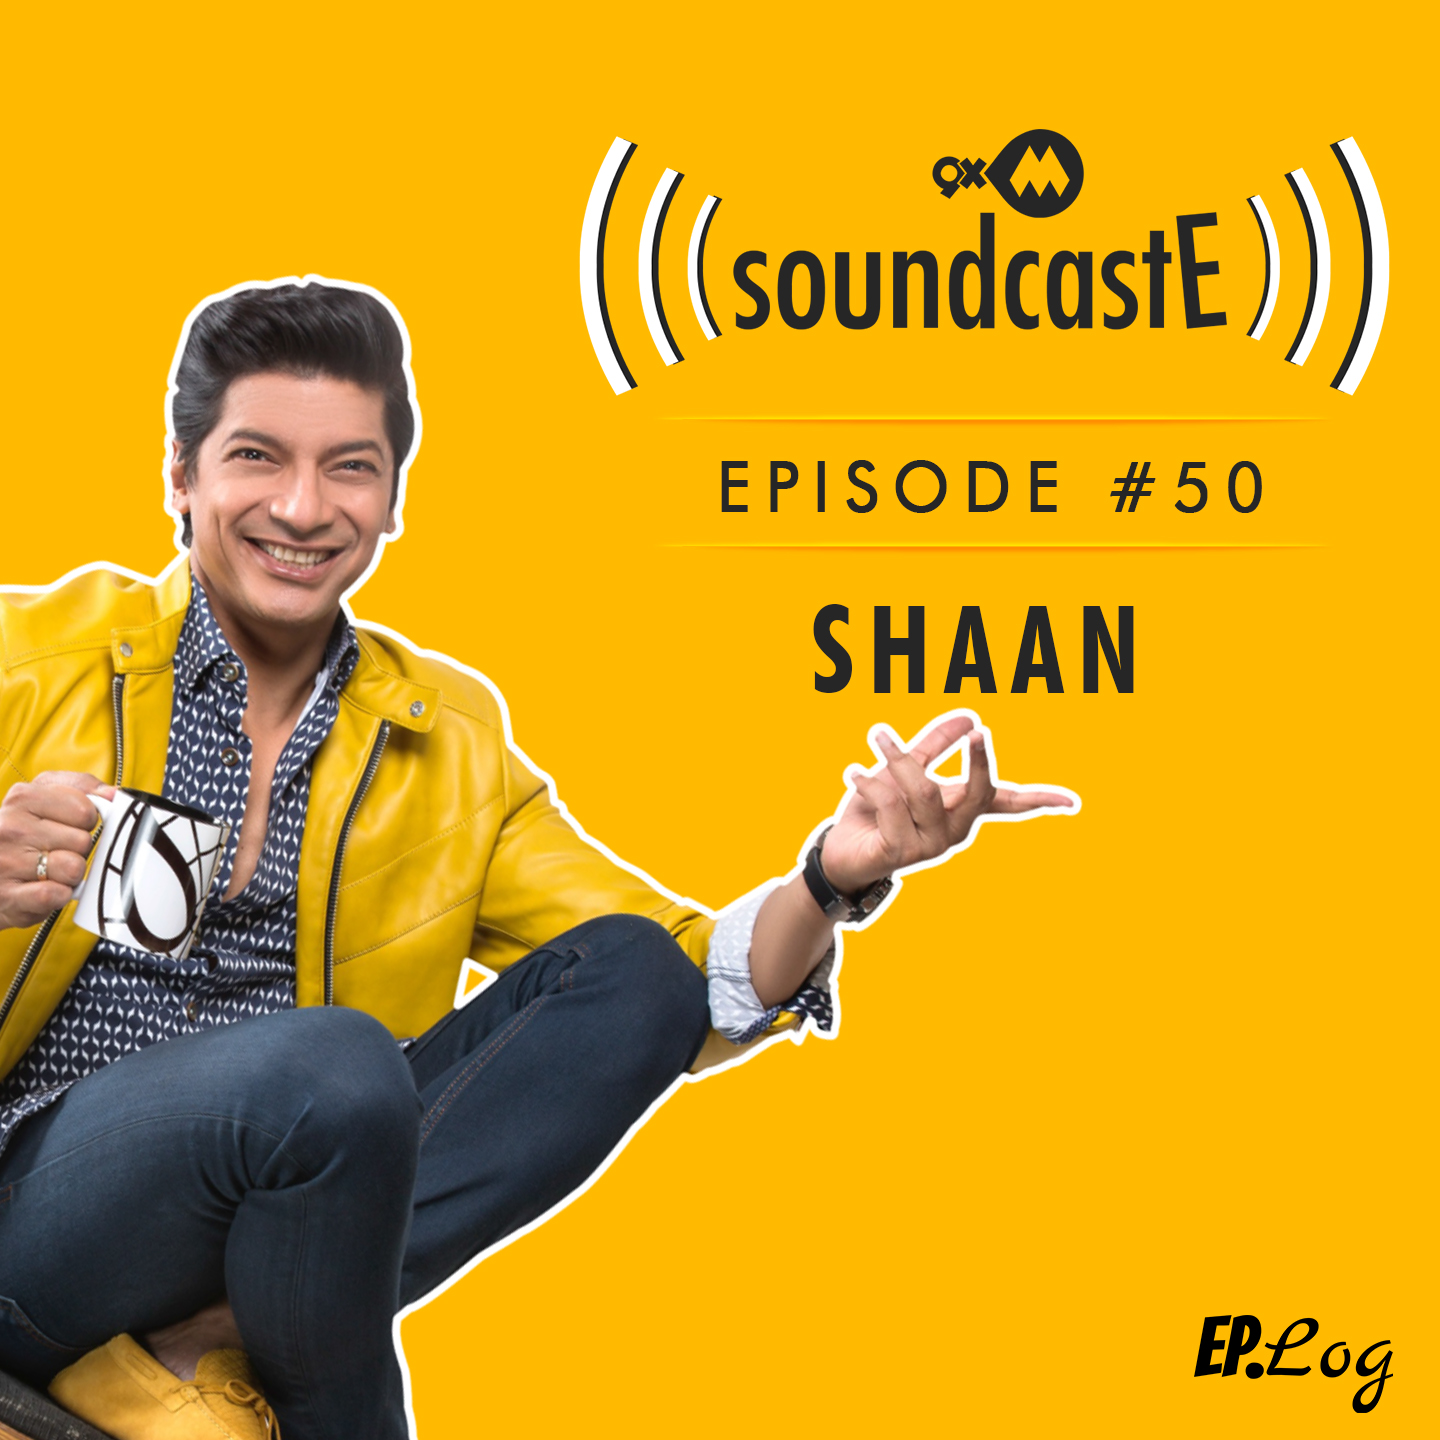 Ep.50: 9XM SoundcastE - Shaan